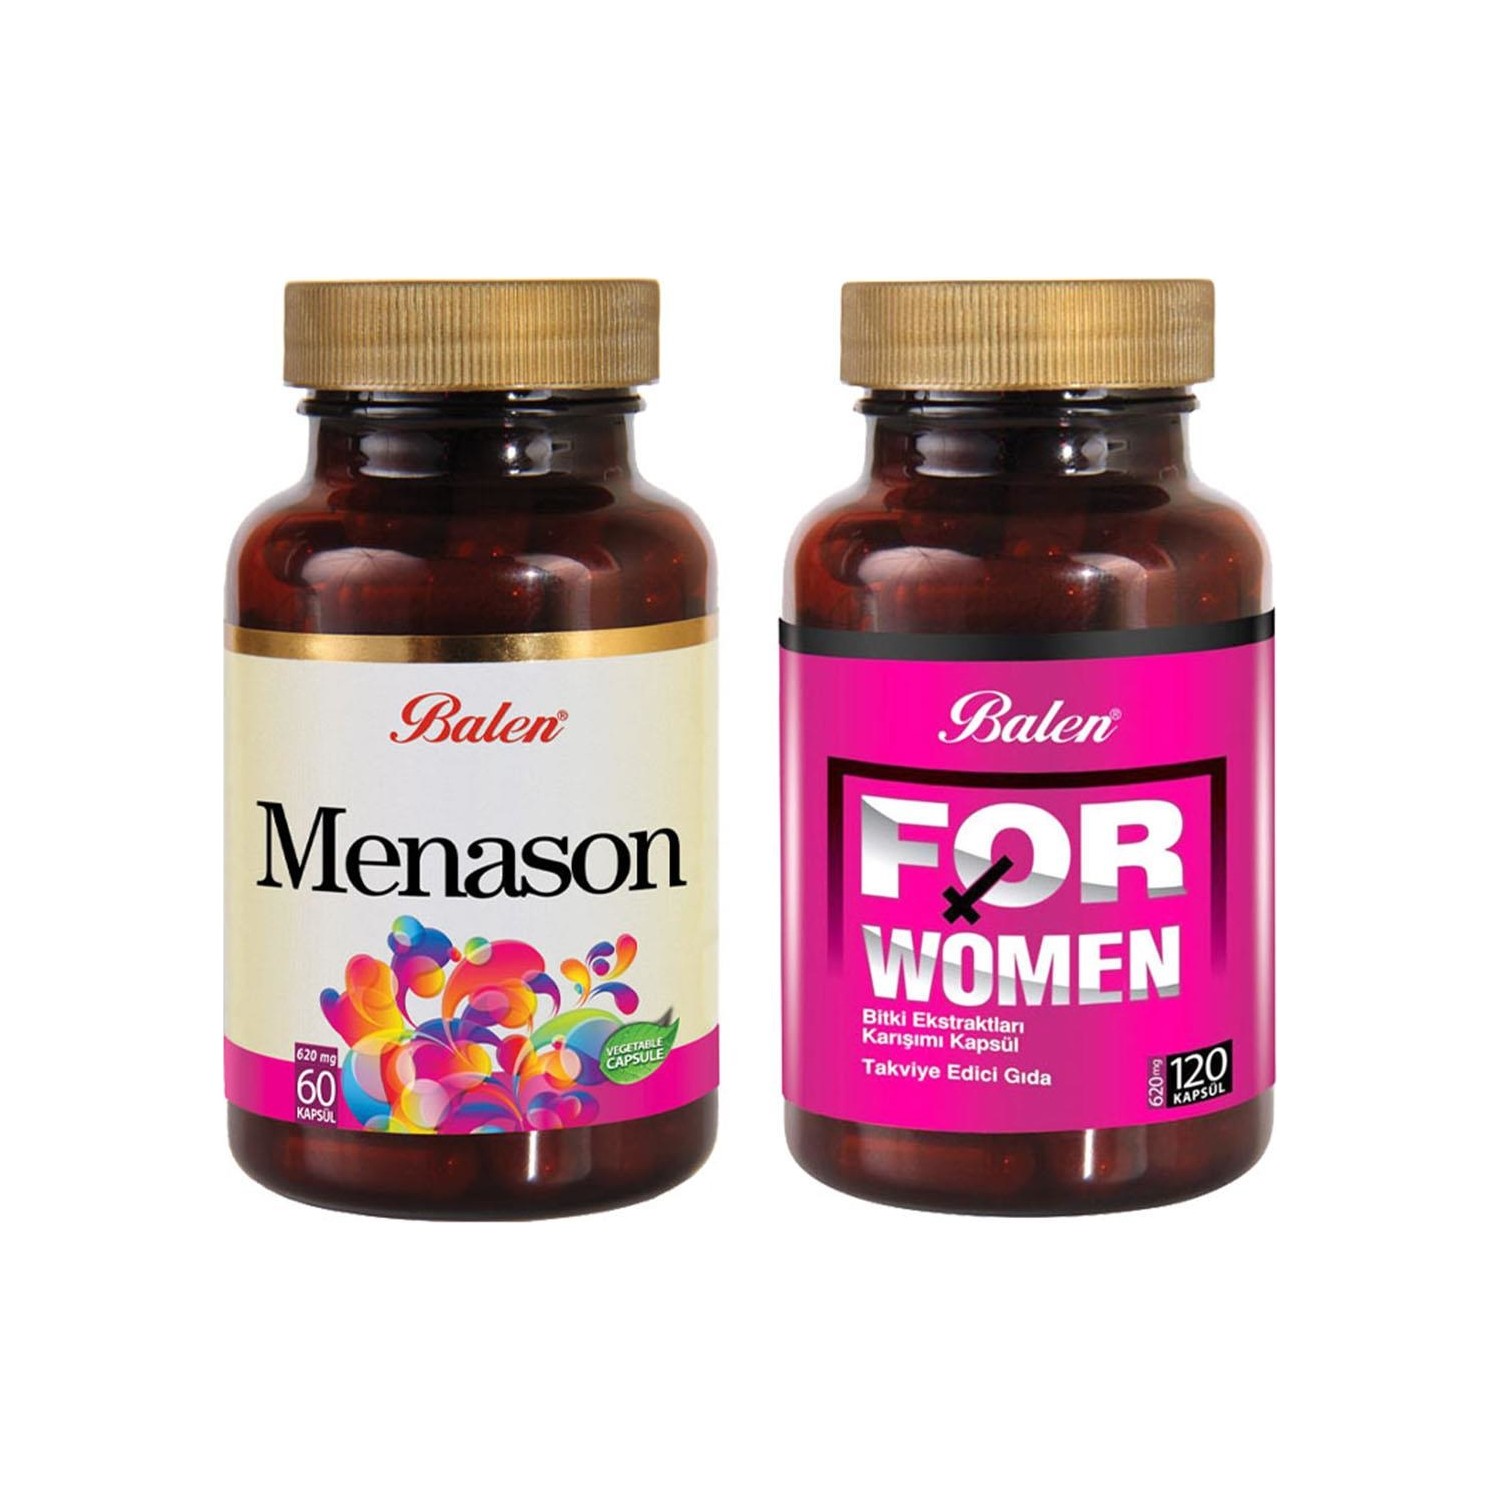 Активная добавка For Woman, 120 капсул, 620 мг + Менасон Balen, 60 капсул, 620 мг цена и фото